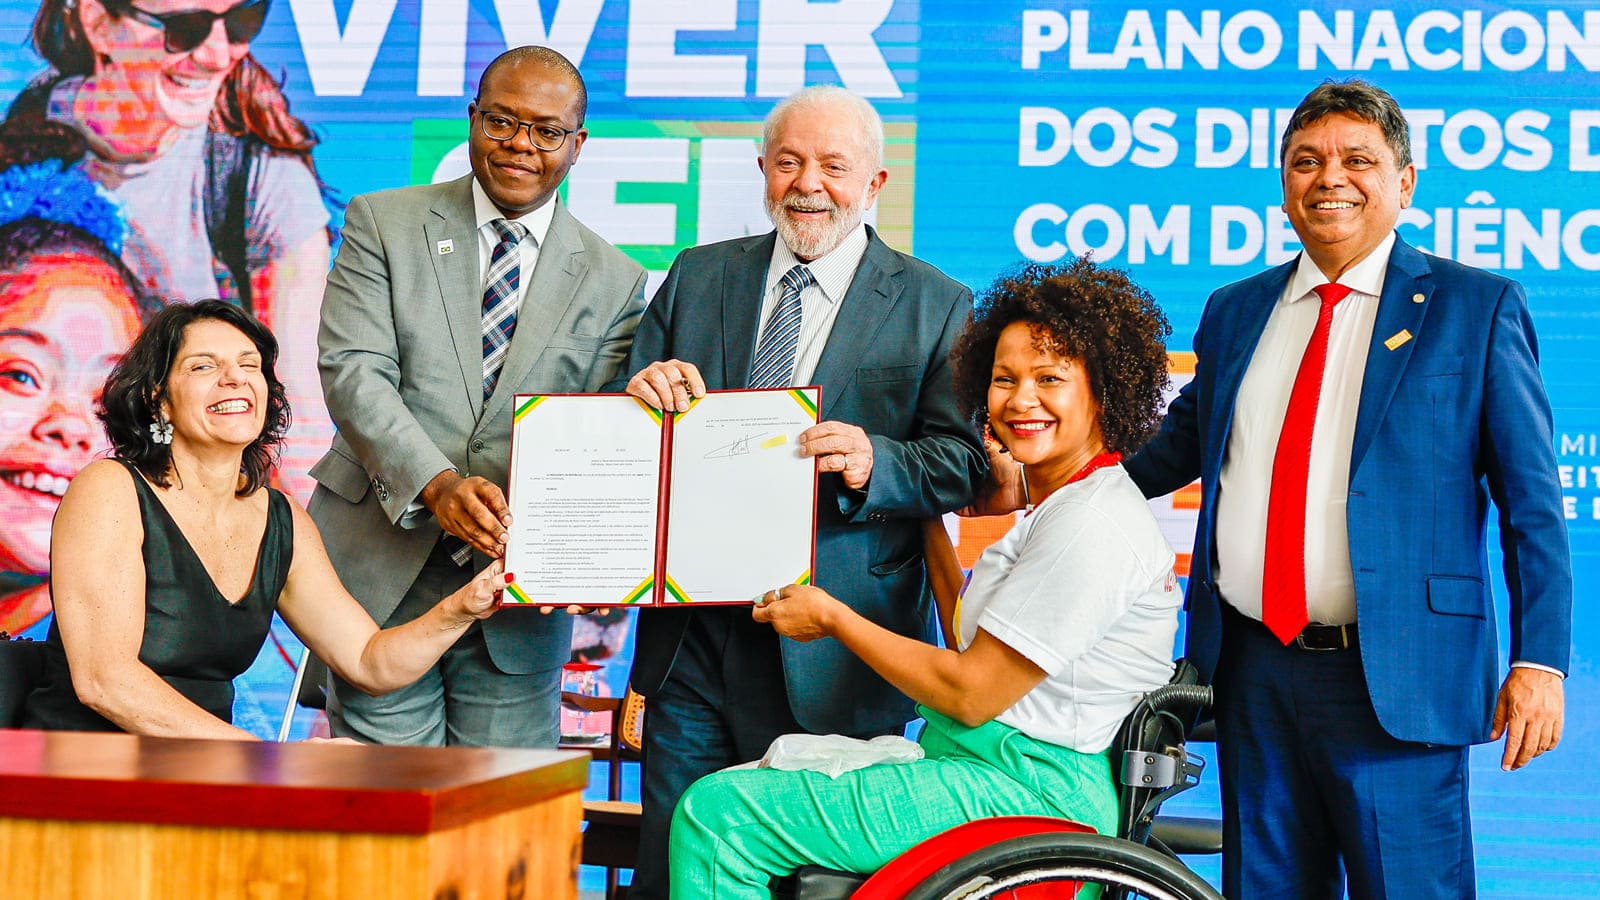 Cerimônia de lançamento do Plano Nacional dos Direitos da Pessoa com Deficiência – Novo Viver sem Limite, com presidente Lula e membros envolvidos.